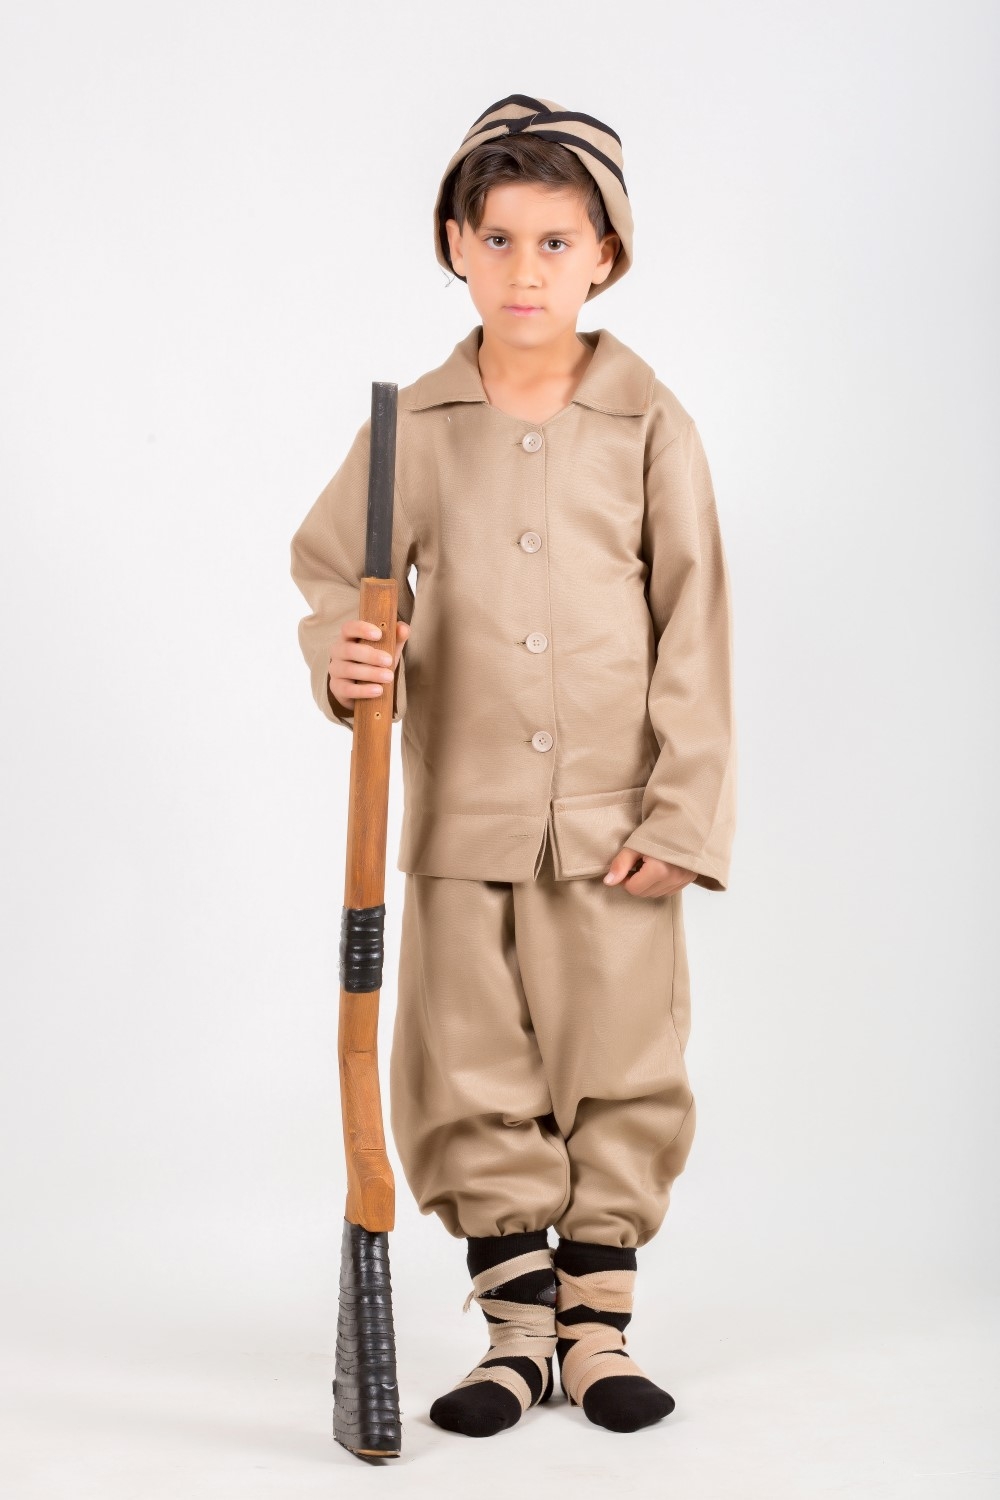 çanakkale asker kostümü - çocuk